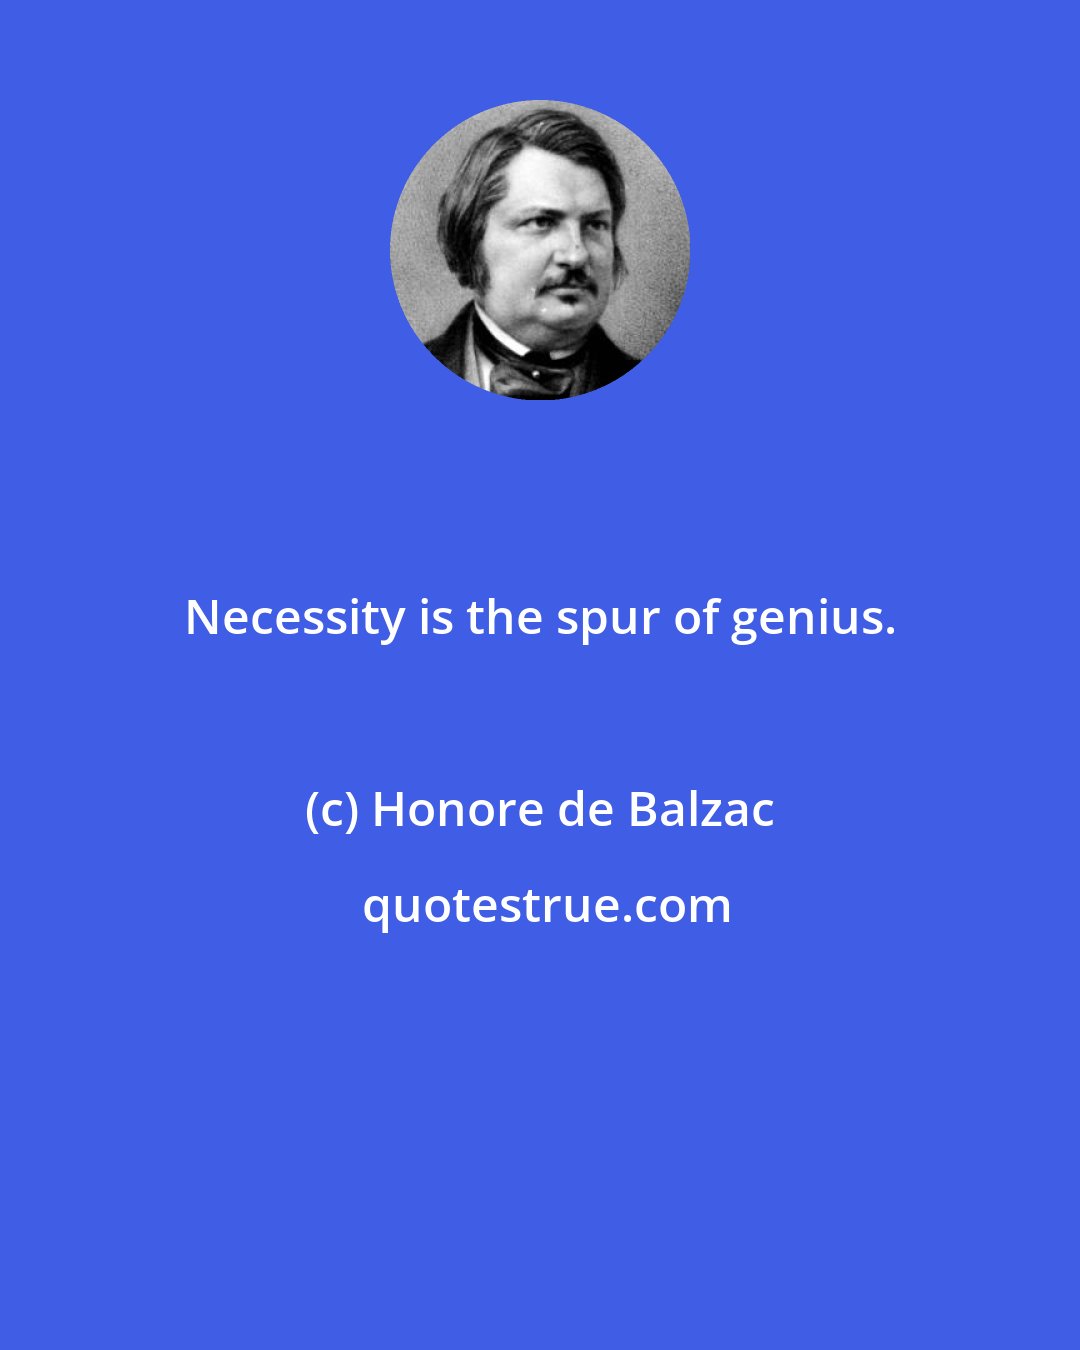 Honore de Balzac: Necessity is the spur of genius.